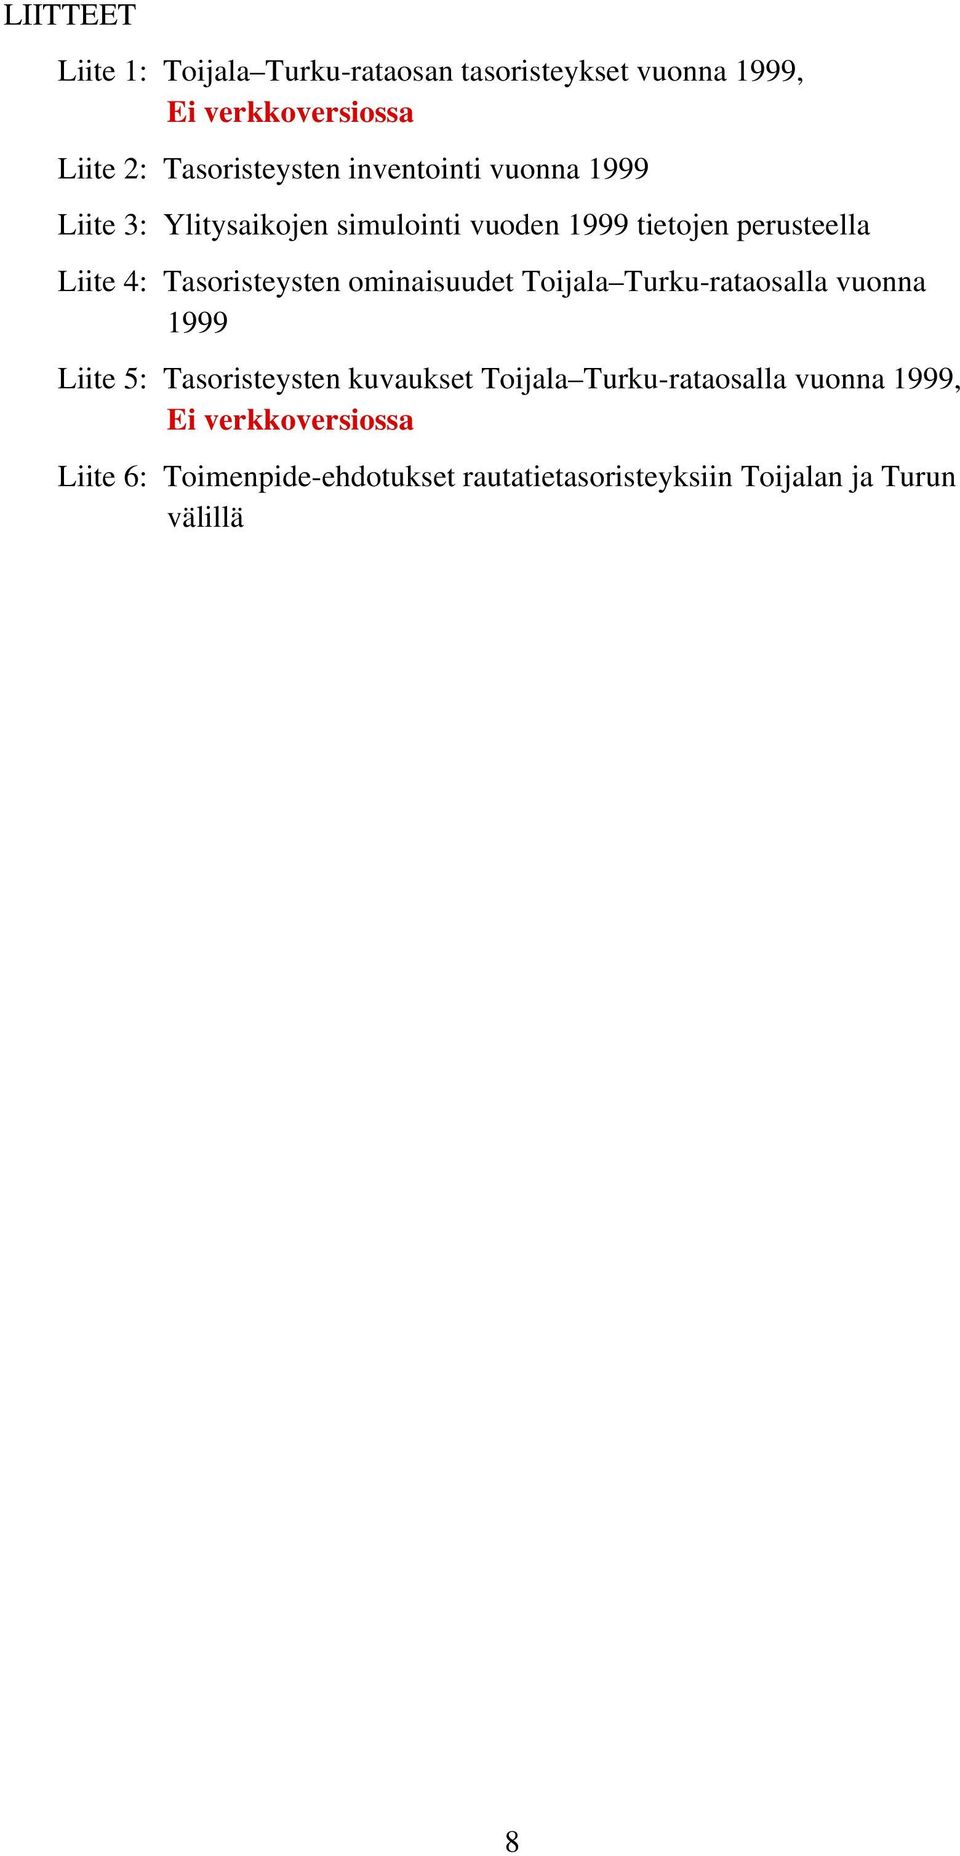 Tasoristeysten ominaisuudet Toijala Turku-rataosalla vuonna 1999 Liite 5: Tasoristeysten kuvaukset Toijala